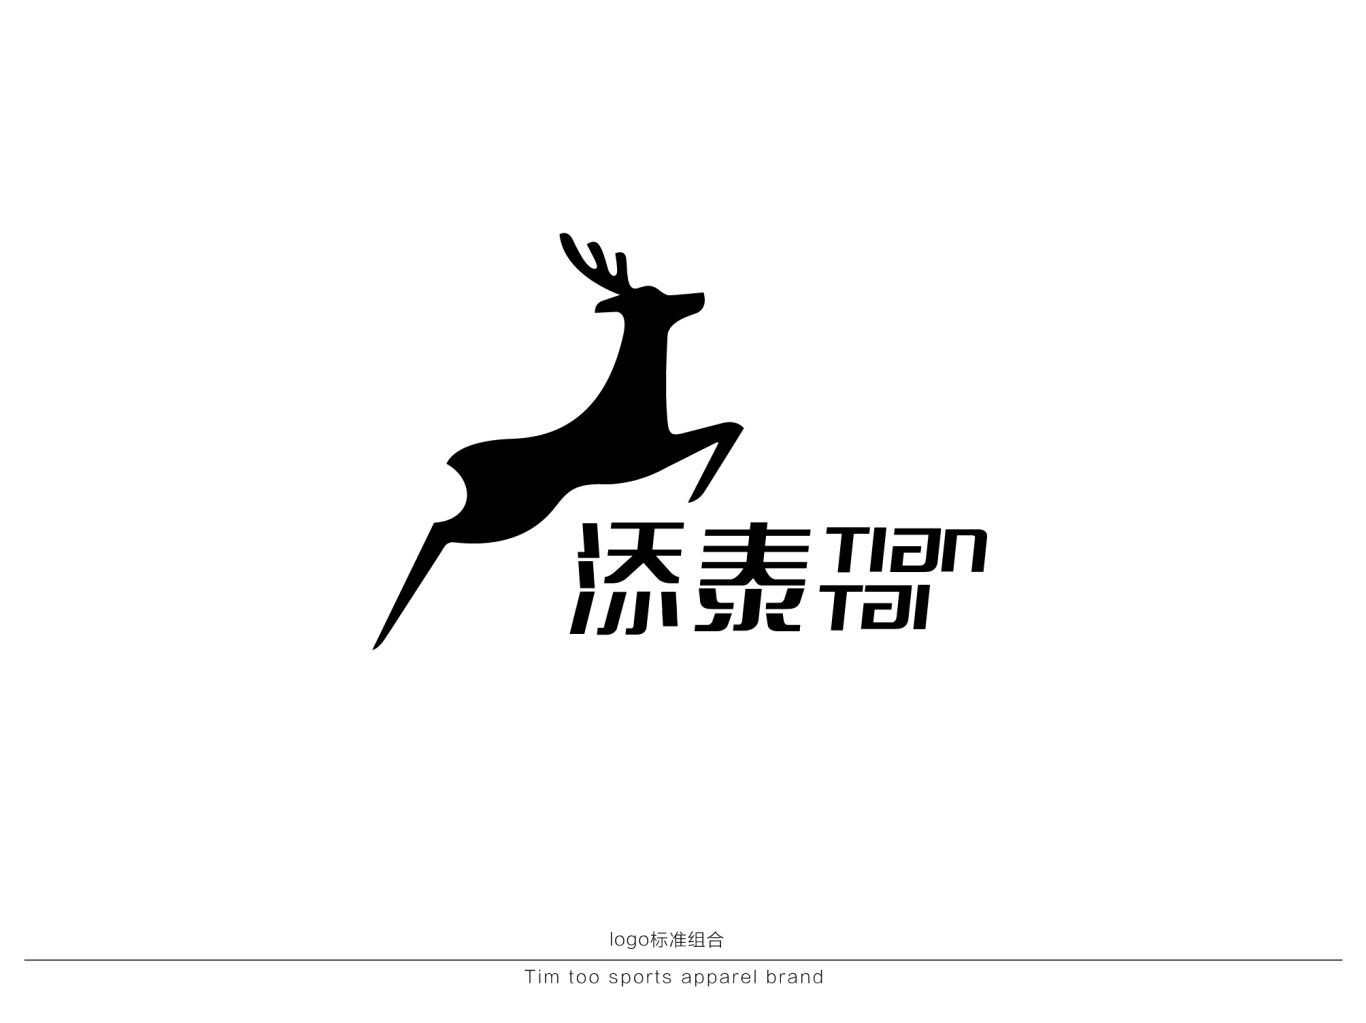 服飾品牌logo設計-錦玉智道品牌顧問案例圖0